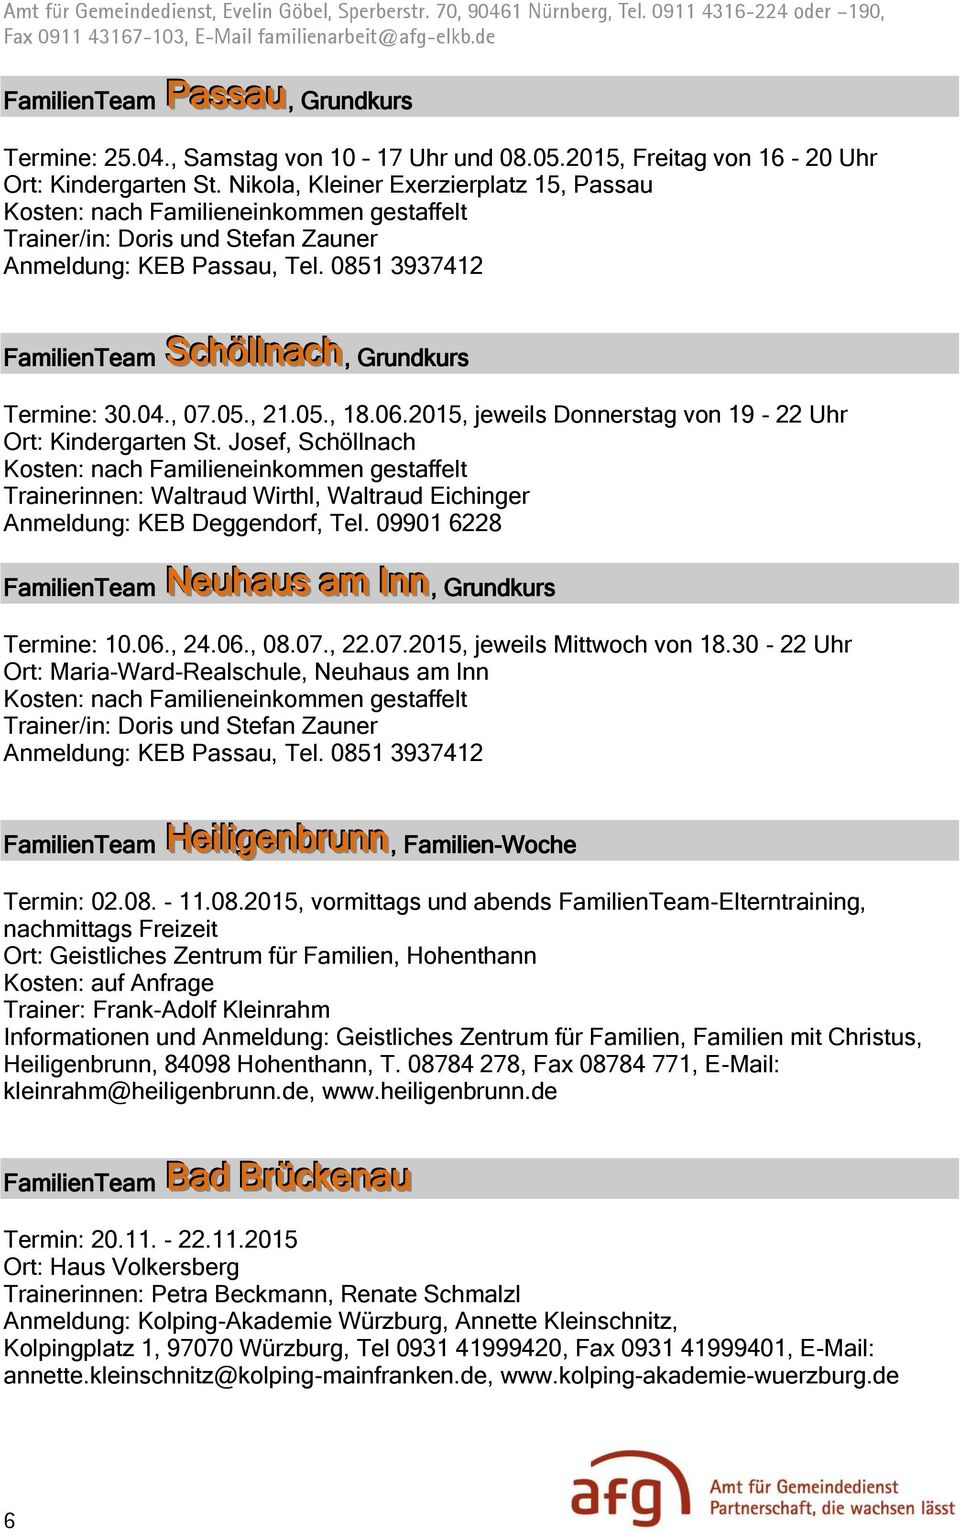 2015, jeweils Donnerstag von 19-22 Uhr Ort: Kindergarten St. Josef, Schöllnach Trainerinnen: Waltraud Wirthl, Waltraud Eichinger Anmeldung: KEB Deggendorf, Tel.